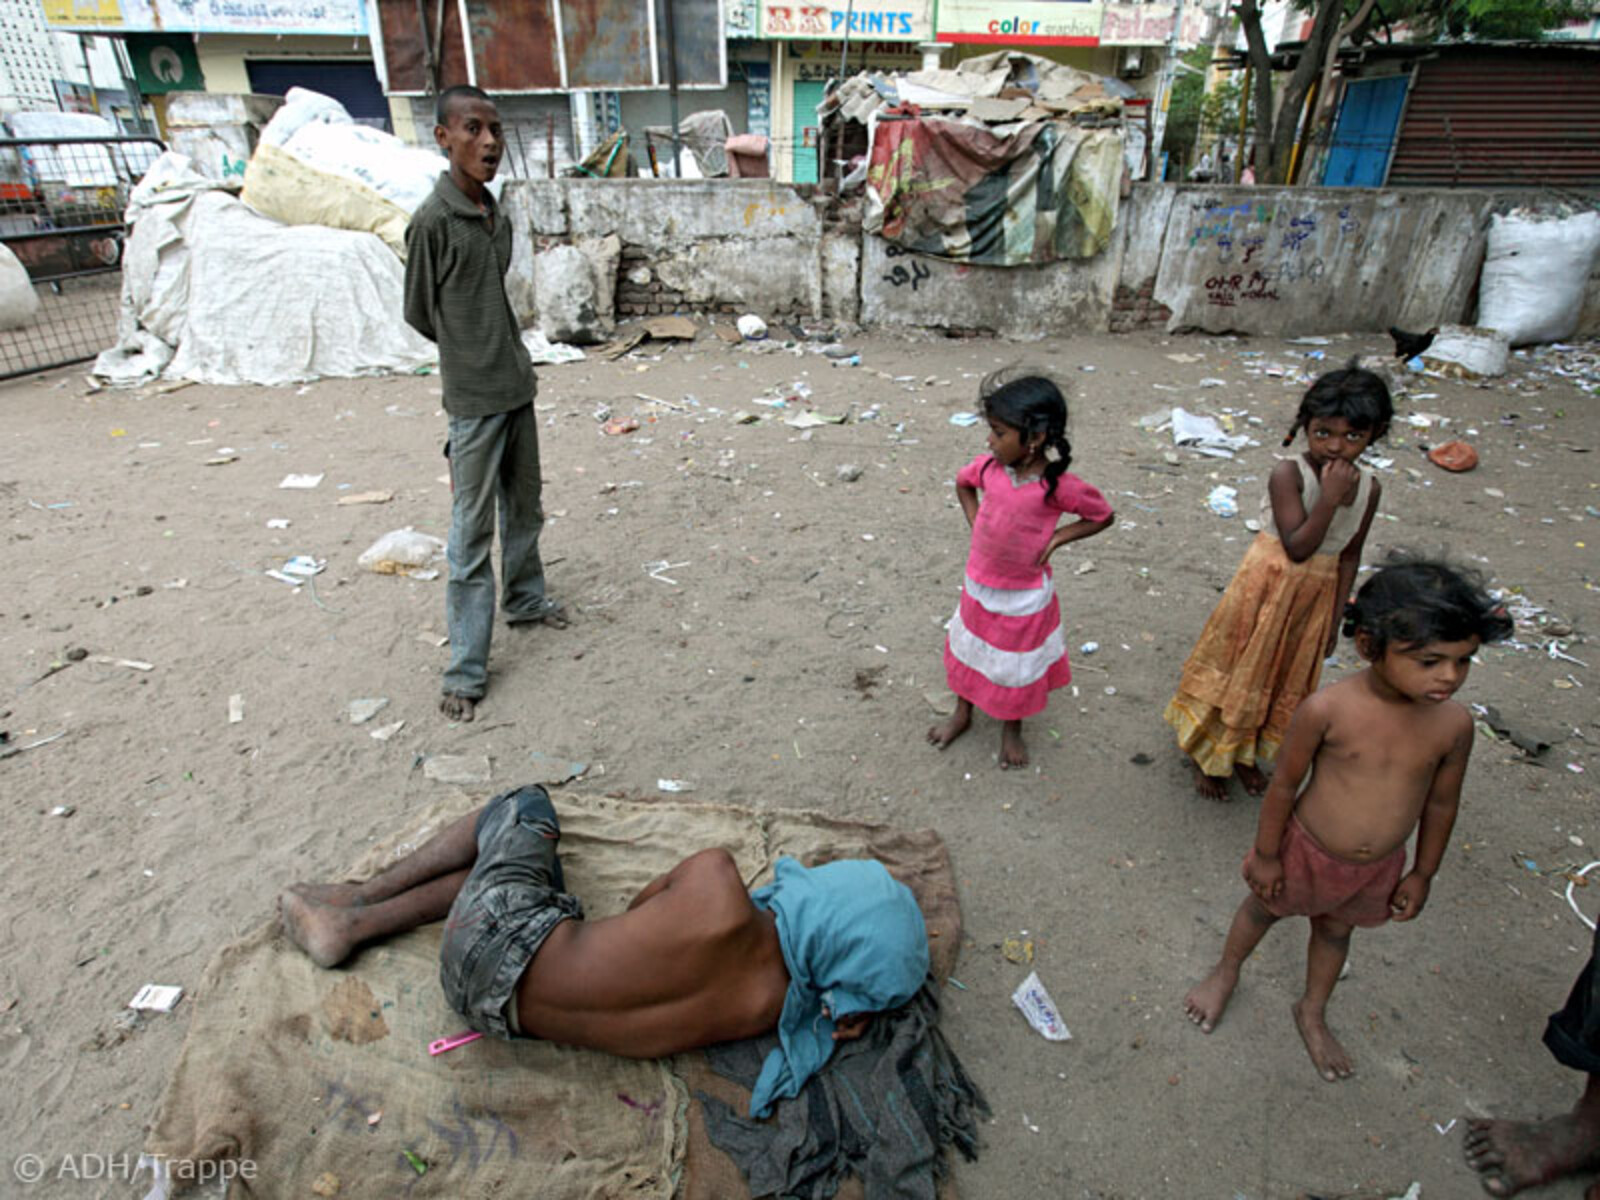 Straßenkinder leben oft unter unzumutbaren Bedingungen